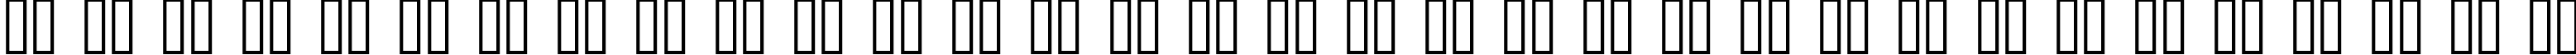 Пример написания русского алфавита шрифтом AlphaFitness